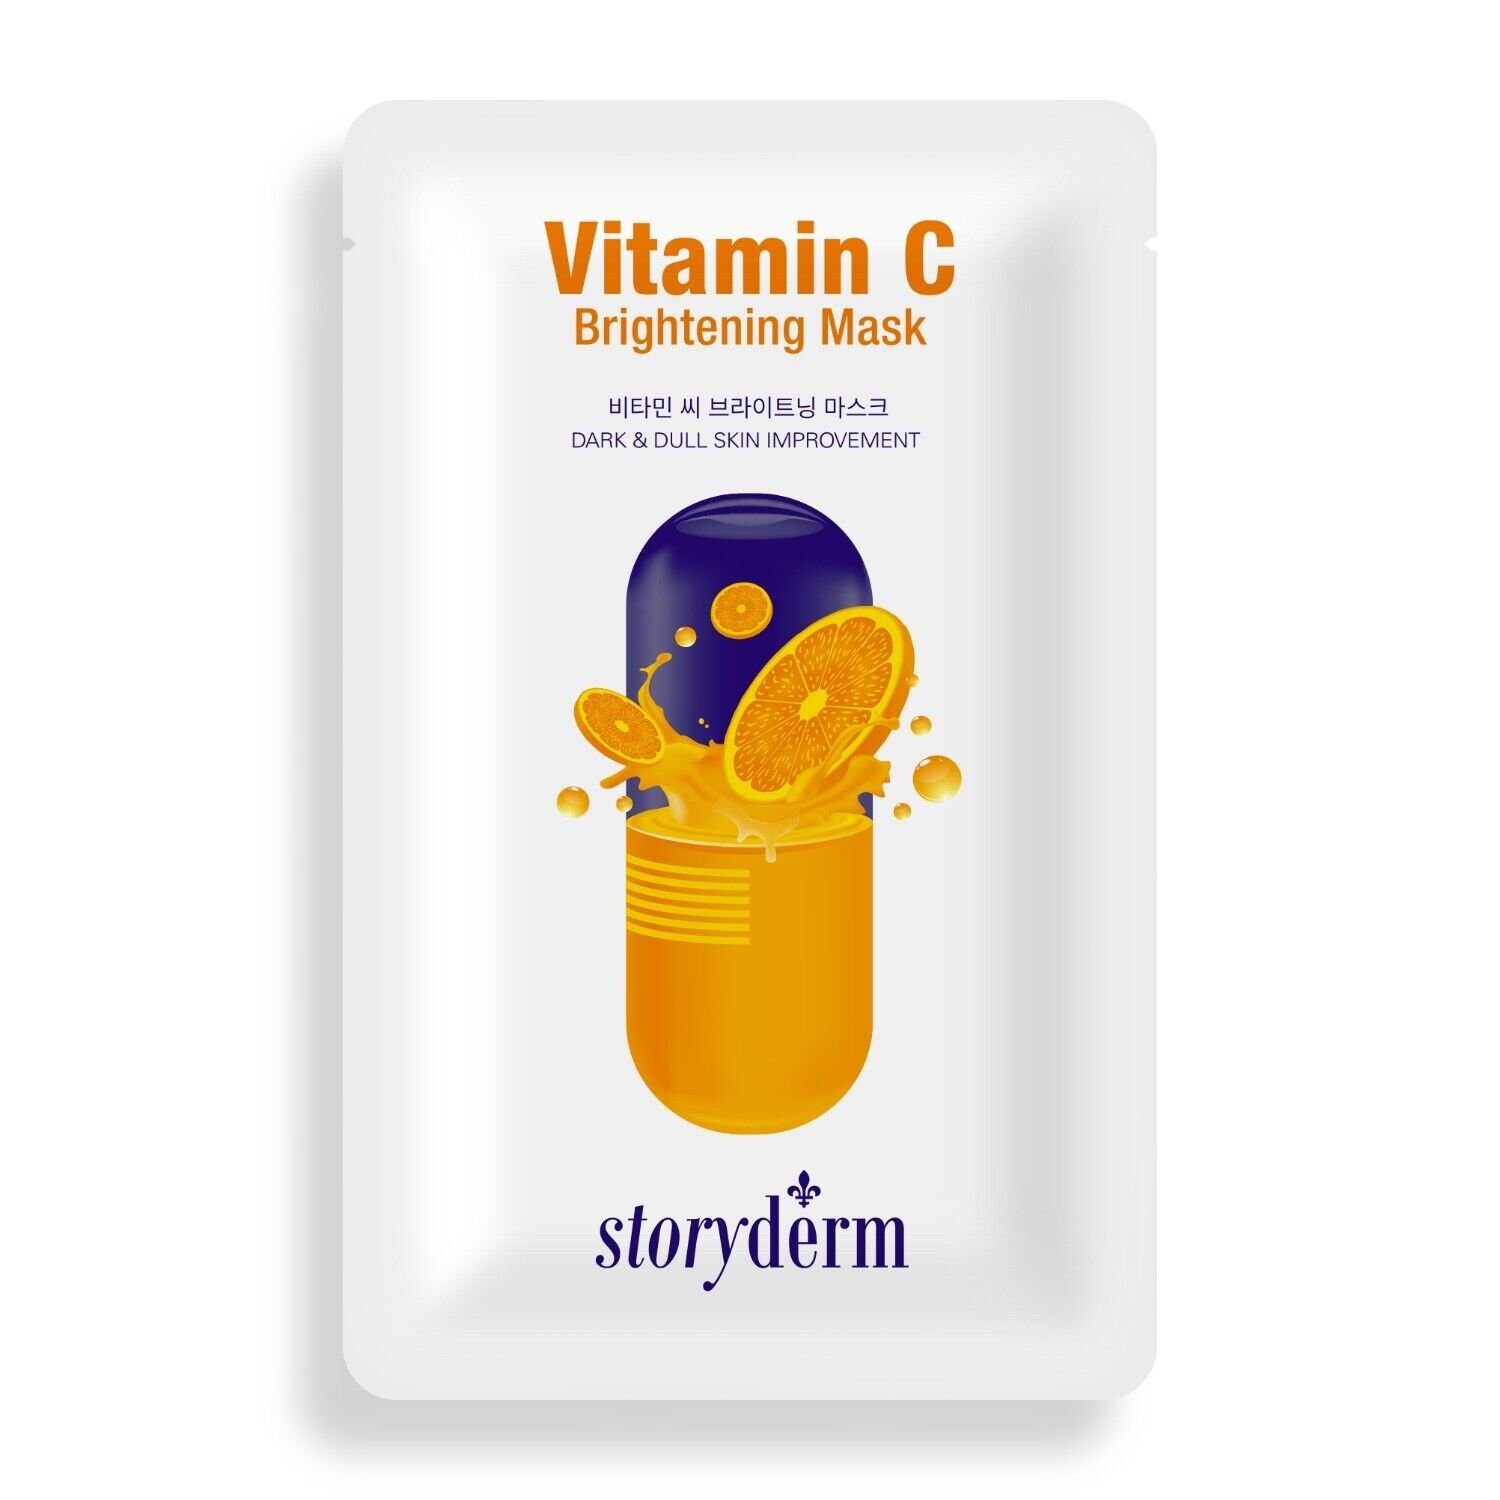 Storyderm Gesichtsmaske NEUHEIT aus Korea Premium Gesichtsmaske Storyderm Pflege Tuchmaske Vitamin C, 1-tlg. VITAMIN C BRIGHTENING